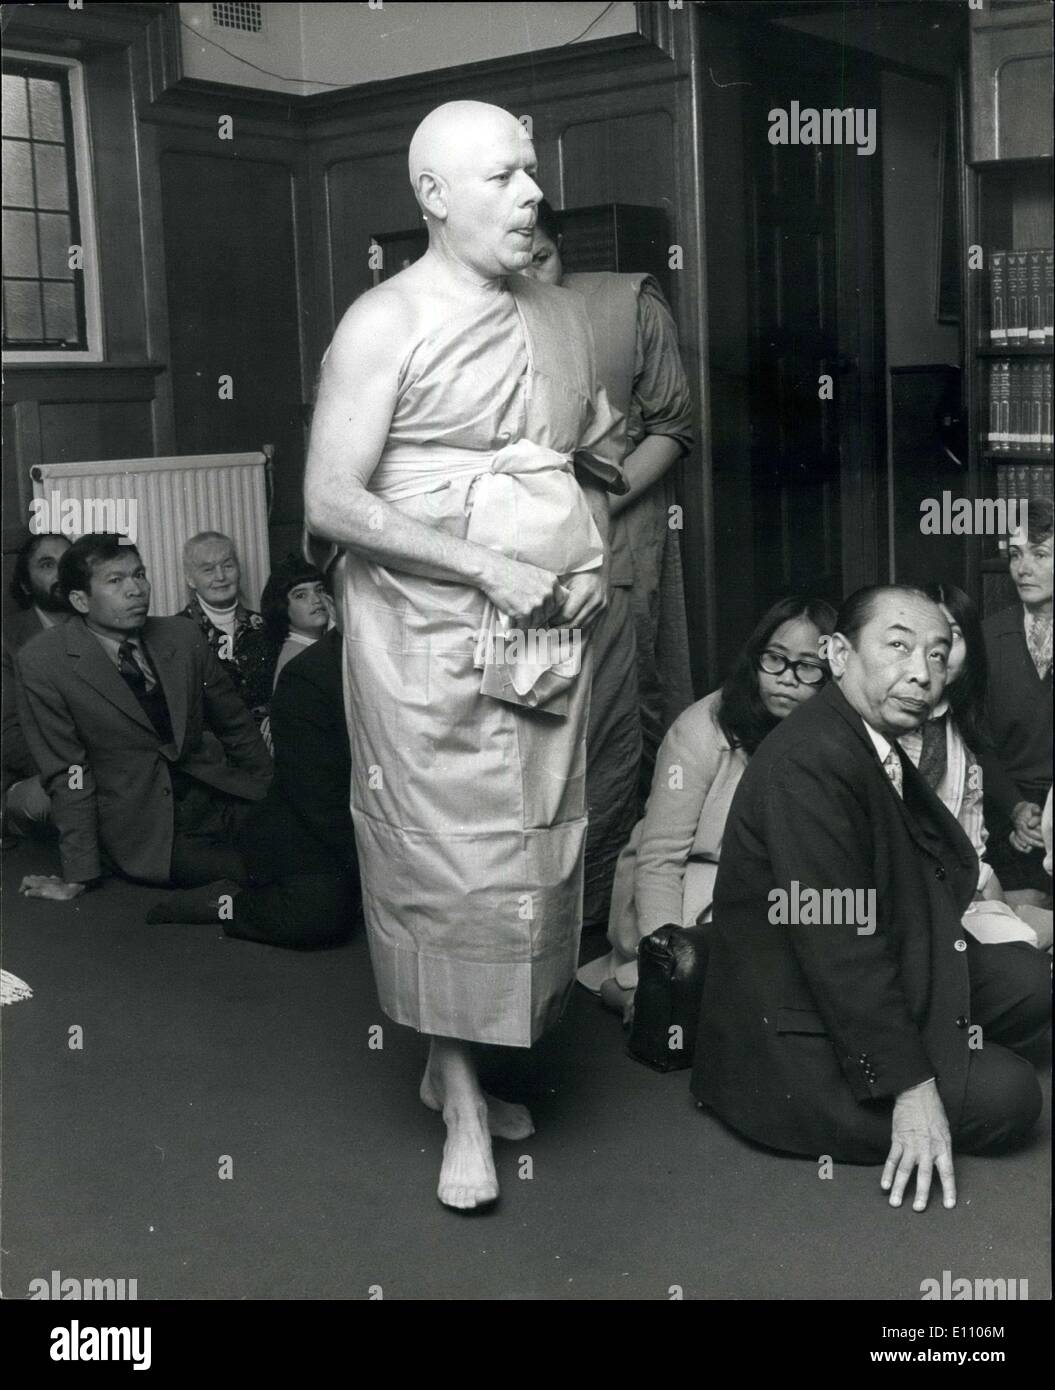 Le 30 septembre 1974 - Français riches devient moine mendiant. : M.Rene-Joly, 62, un riche Français qui a été faite hier par un moine Abbé Phra Medhidhammalaya, lors d'une cérémonie dans le Temple Bouddhiste, East Sheen, Londres. Impossible de trouver en France, toute personne qui pourrait l'initient, N. Joly a été introduit à l'Est par le Thai temple brillant ambassadeur à Londres, M. Konthi Supamonghon. En tant que moine, il sera prévu de mendier pour sa nourriture par des étrangers. Banque D'Images